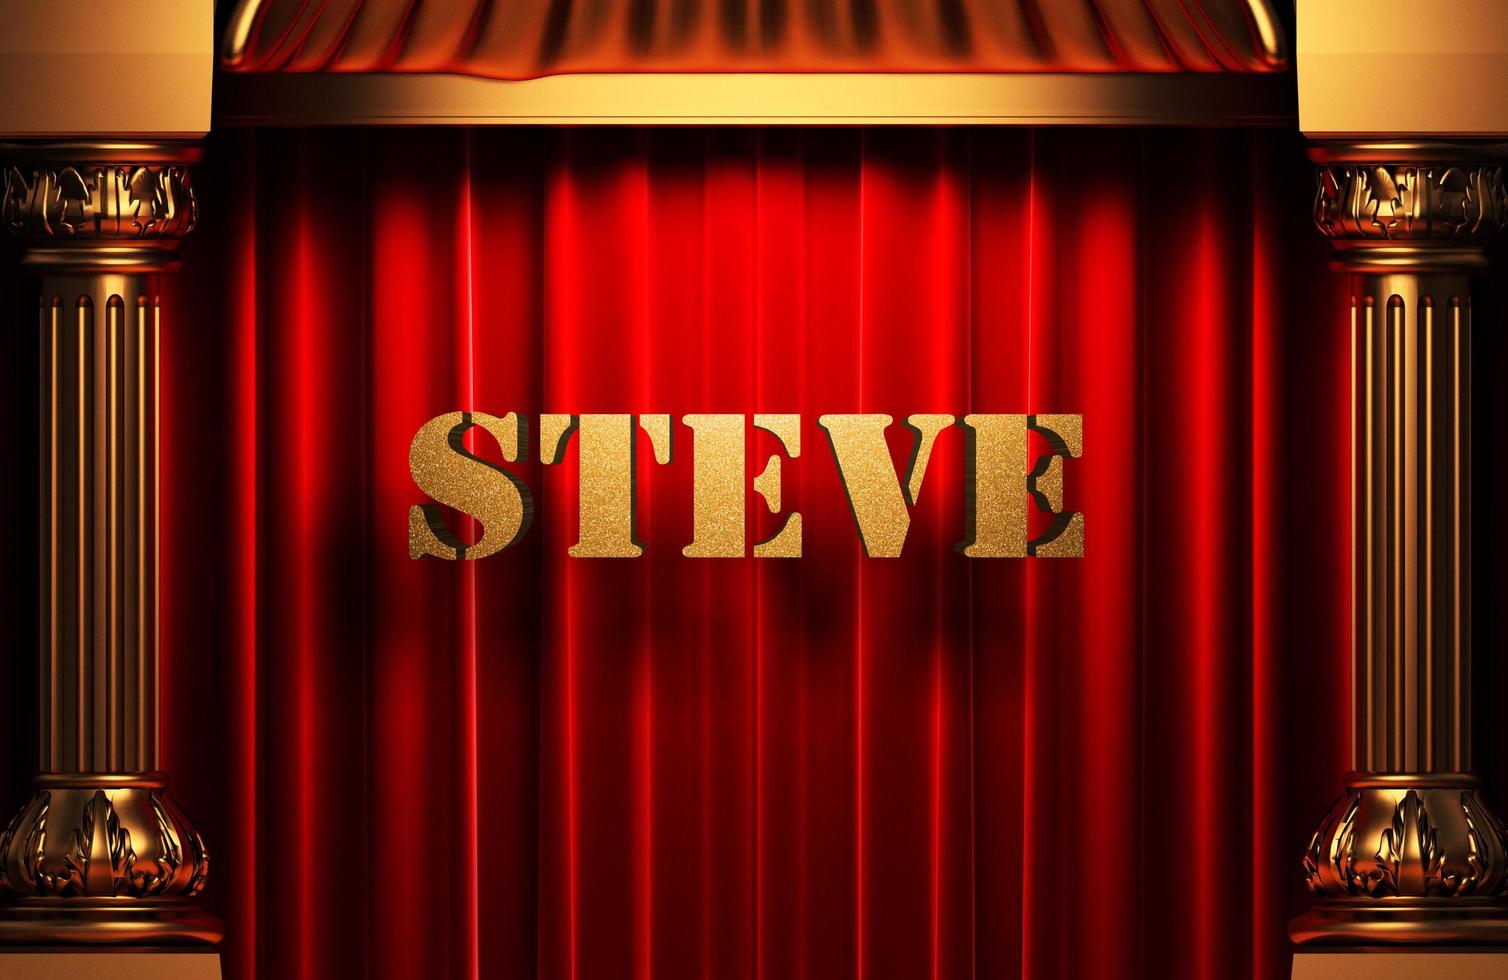 Steve goldenes Wort auf rotem Vorhang foto